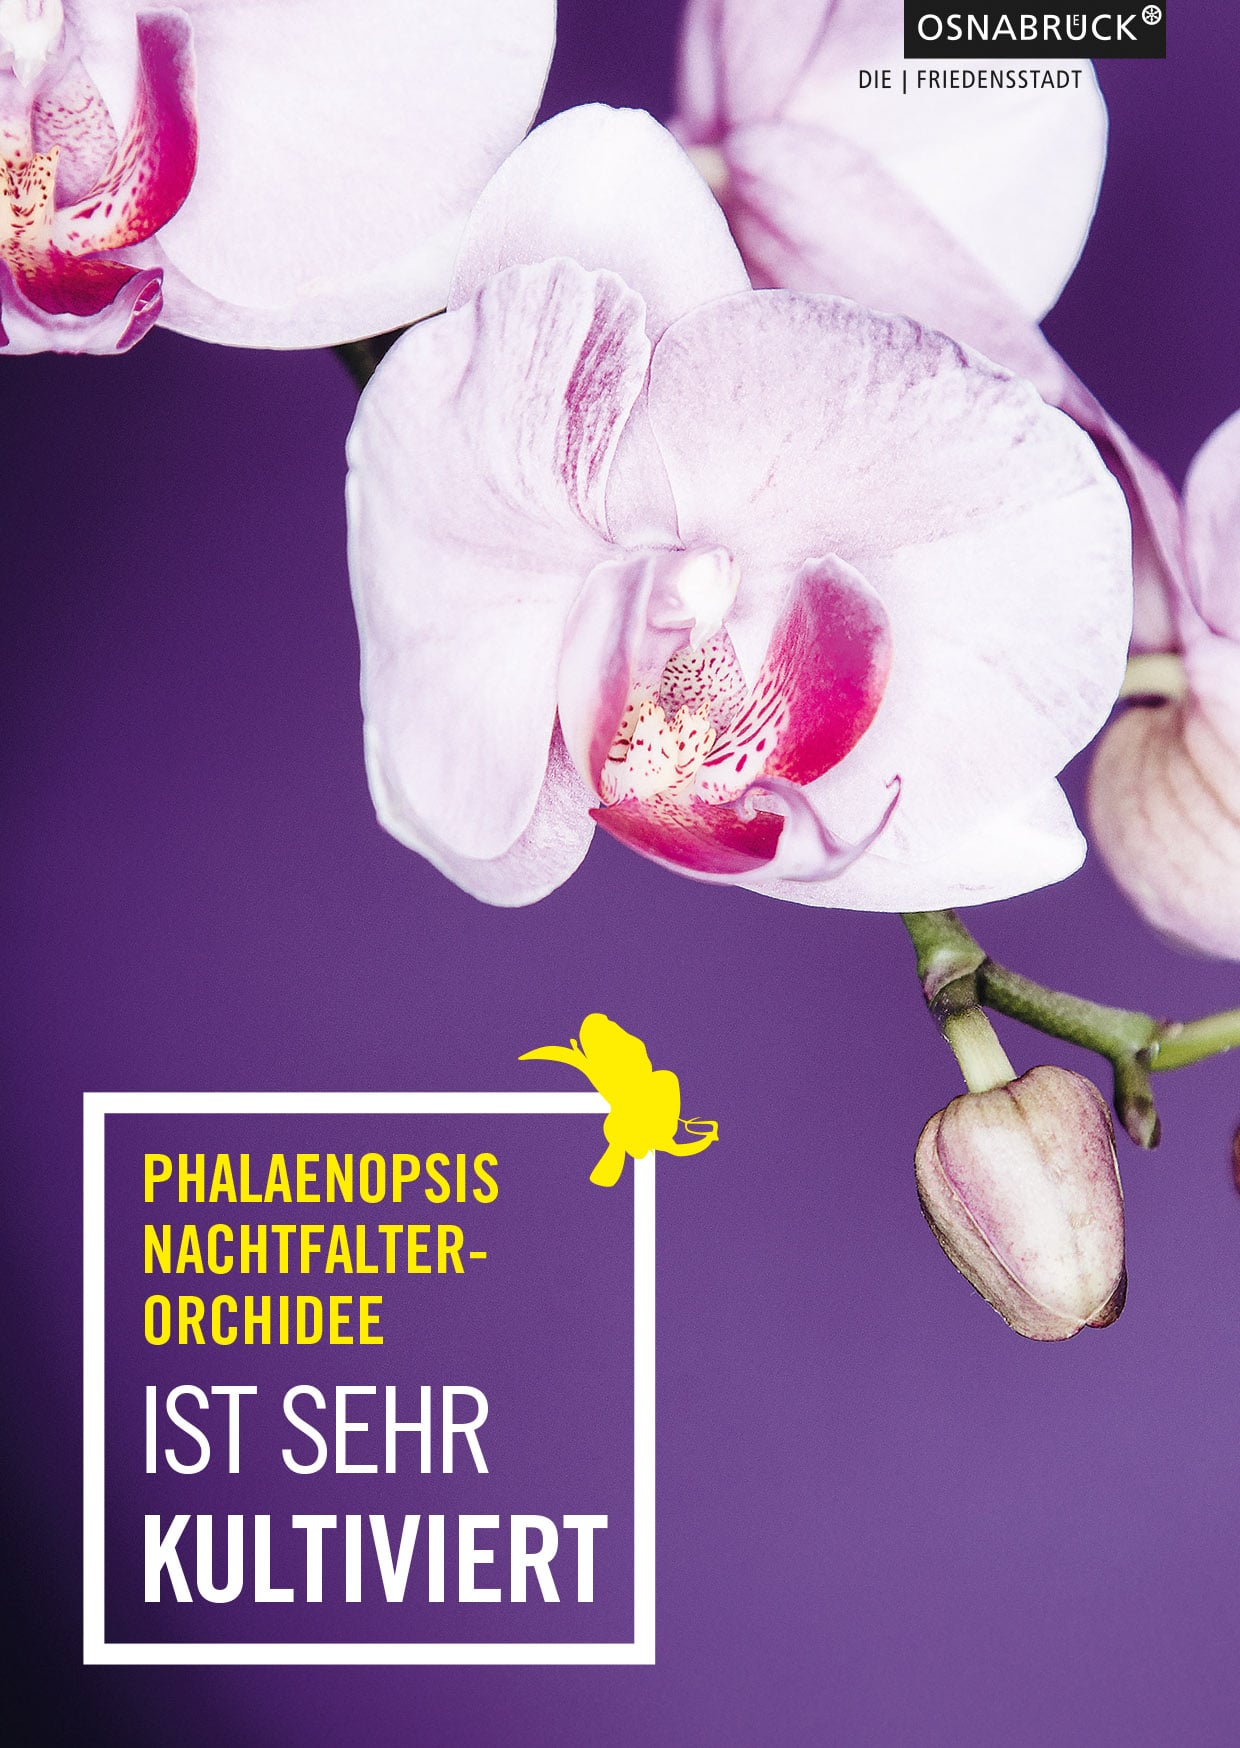 Design Postkarten für Orchideenausstellung in Osnabrück von der Osnabrücker Grafikdesignagentur Hasegold